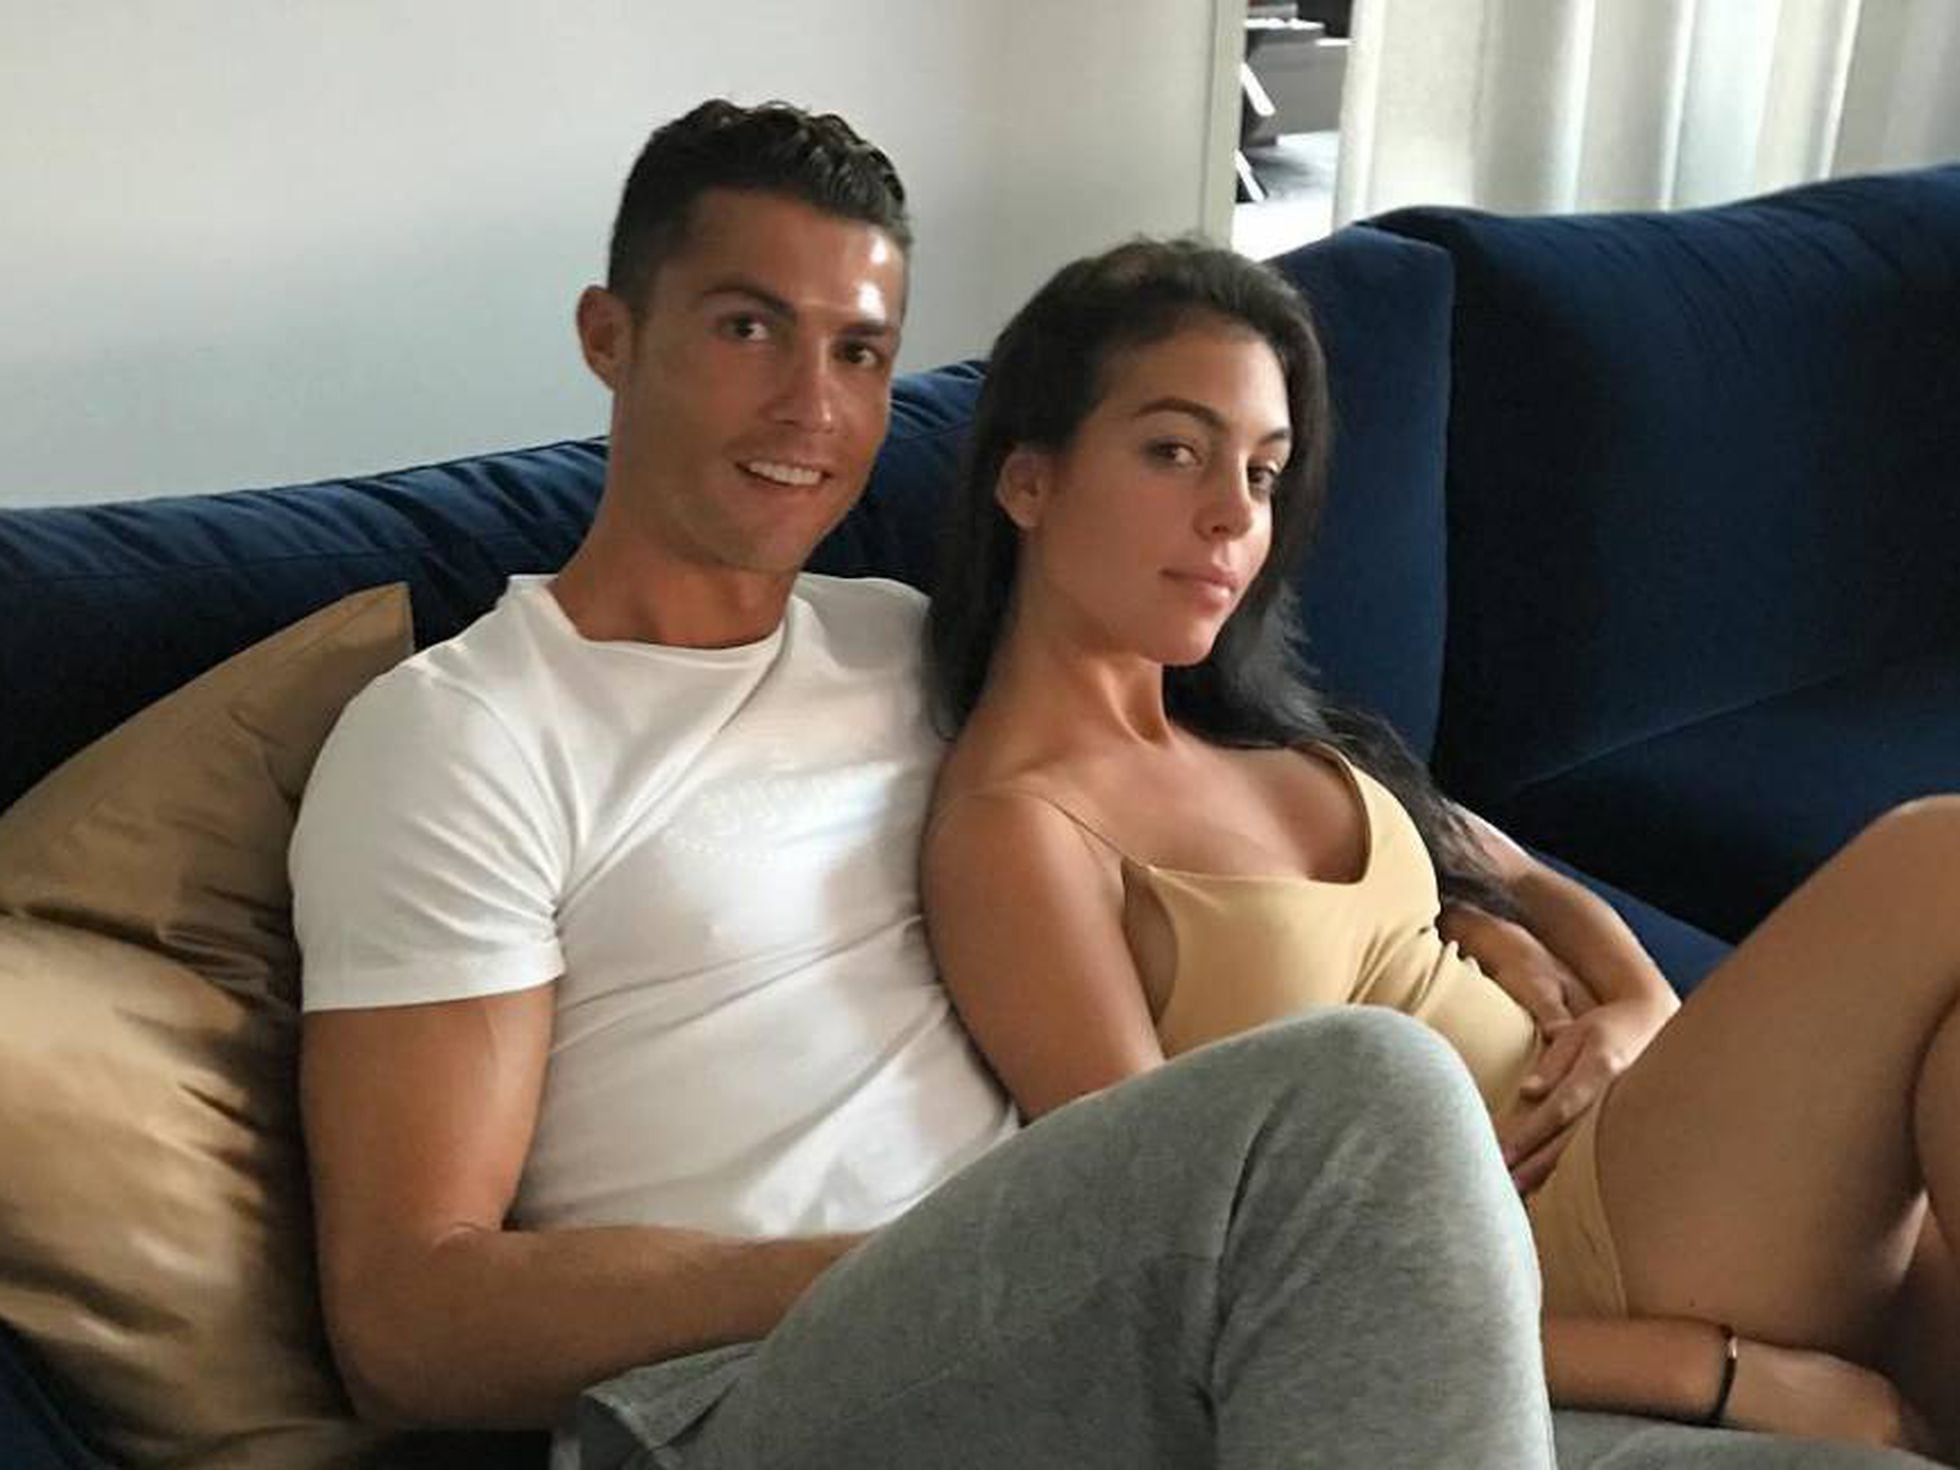 Georgina Rodríguez: Cristiano Ronaldo oficializa su relación en Instagram y desata los rumores | Gente | EL PAÍS